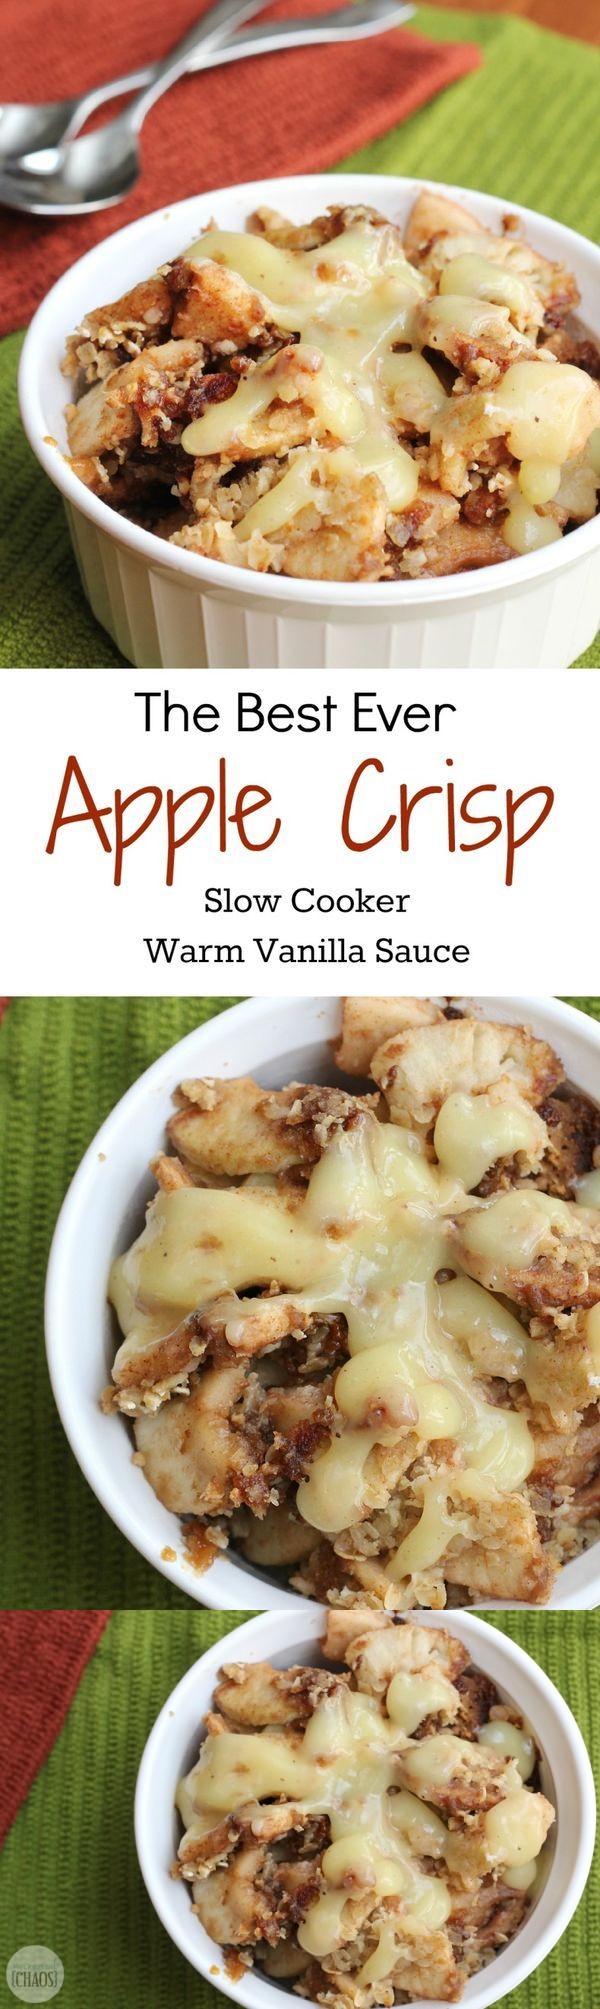 Slow-Cooker Apple Crisp with Warm Vanilla Sauce